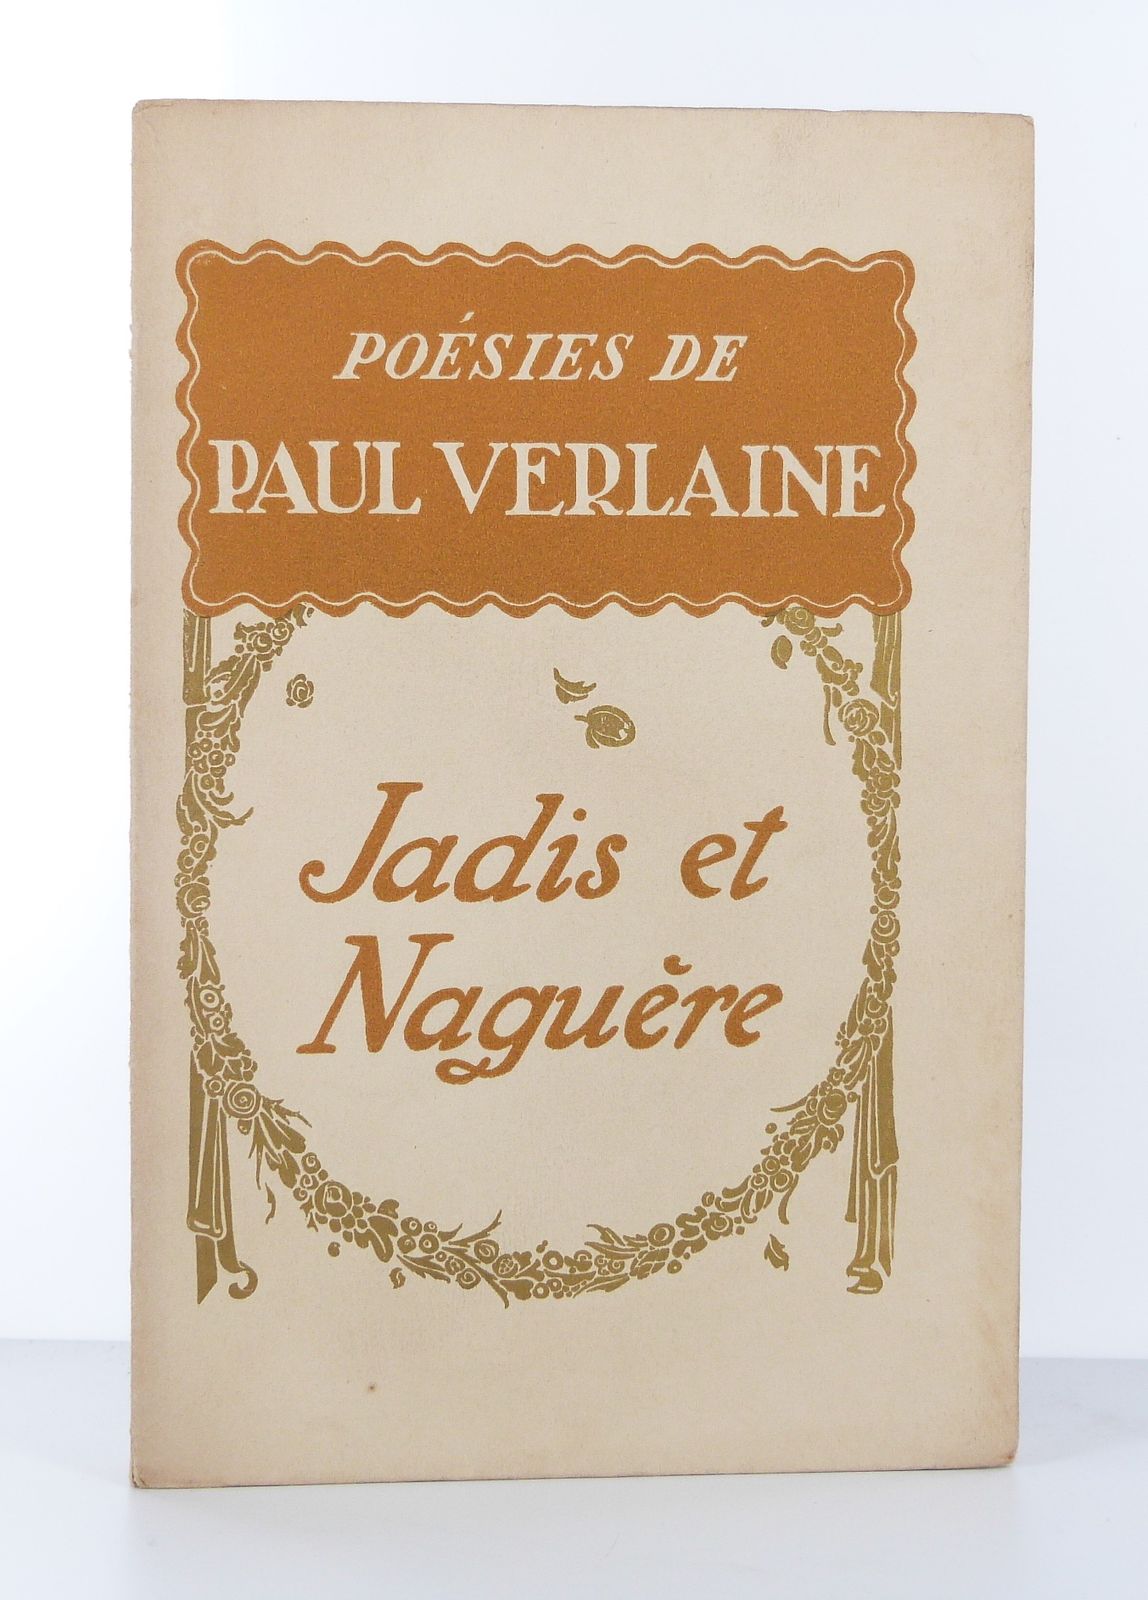 Poésies de Paul Verlaine. Jadis et naguère.